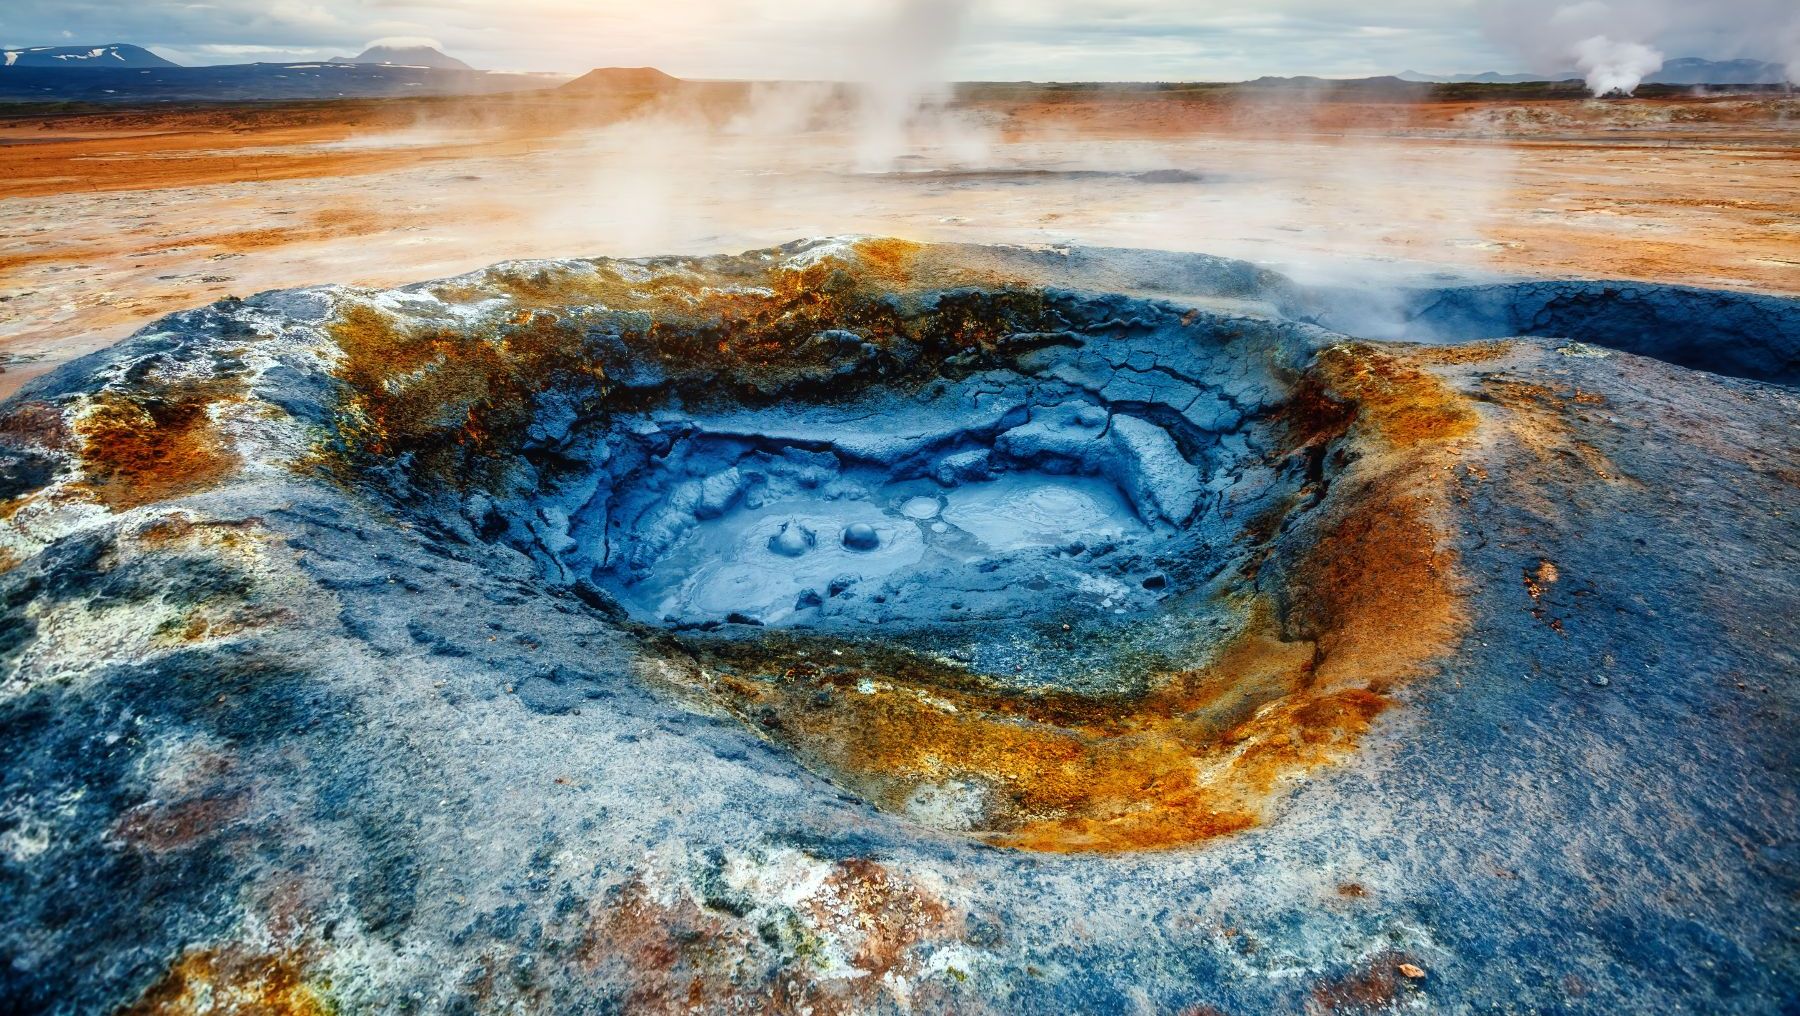 vlak onder het aardoppervlak in het geothermische gebied námaskarð gaan ontzagwekkende krachten schuil